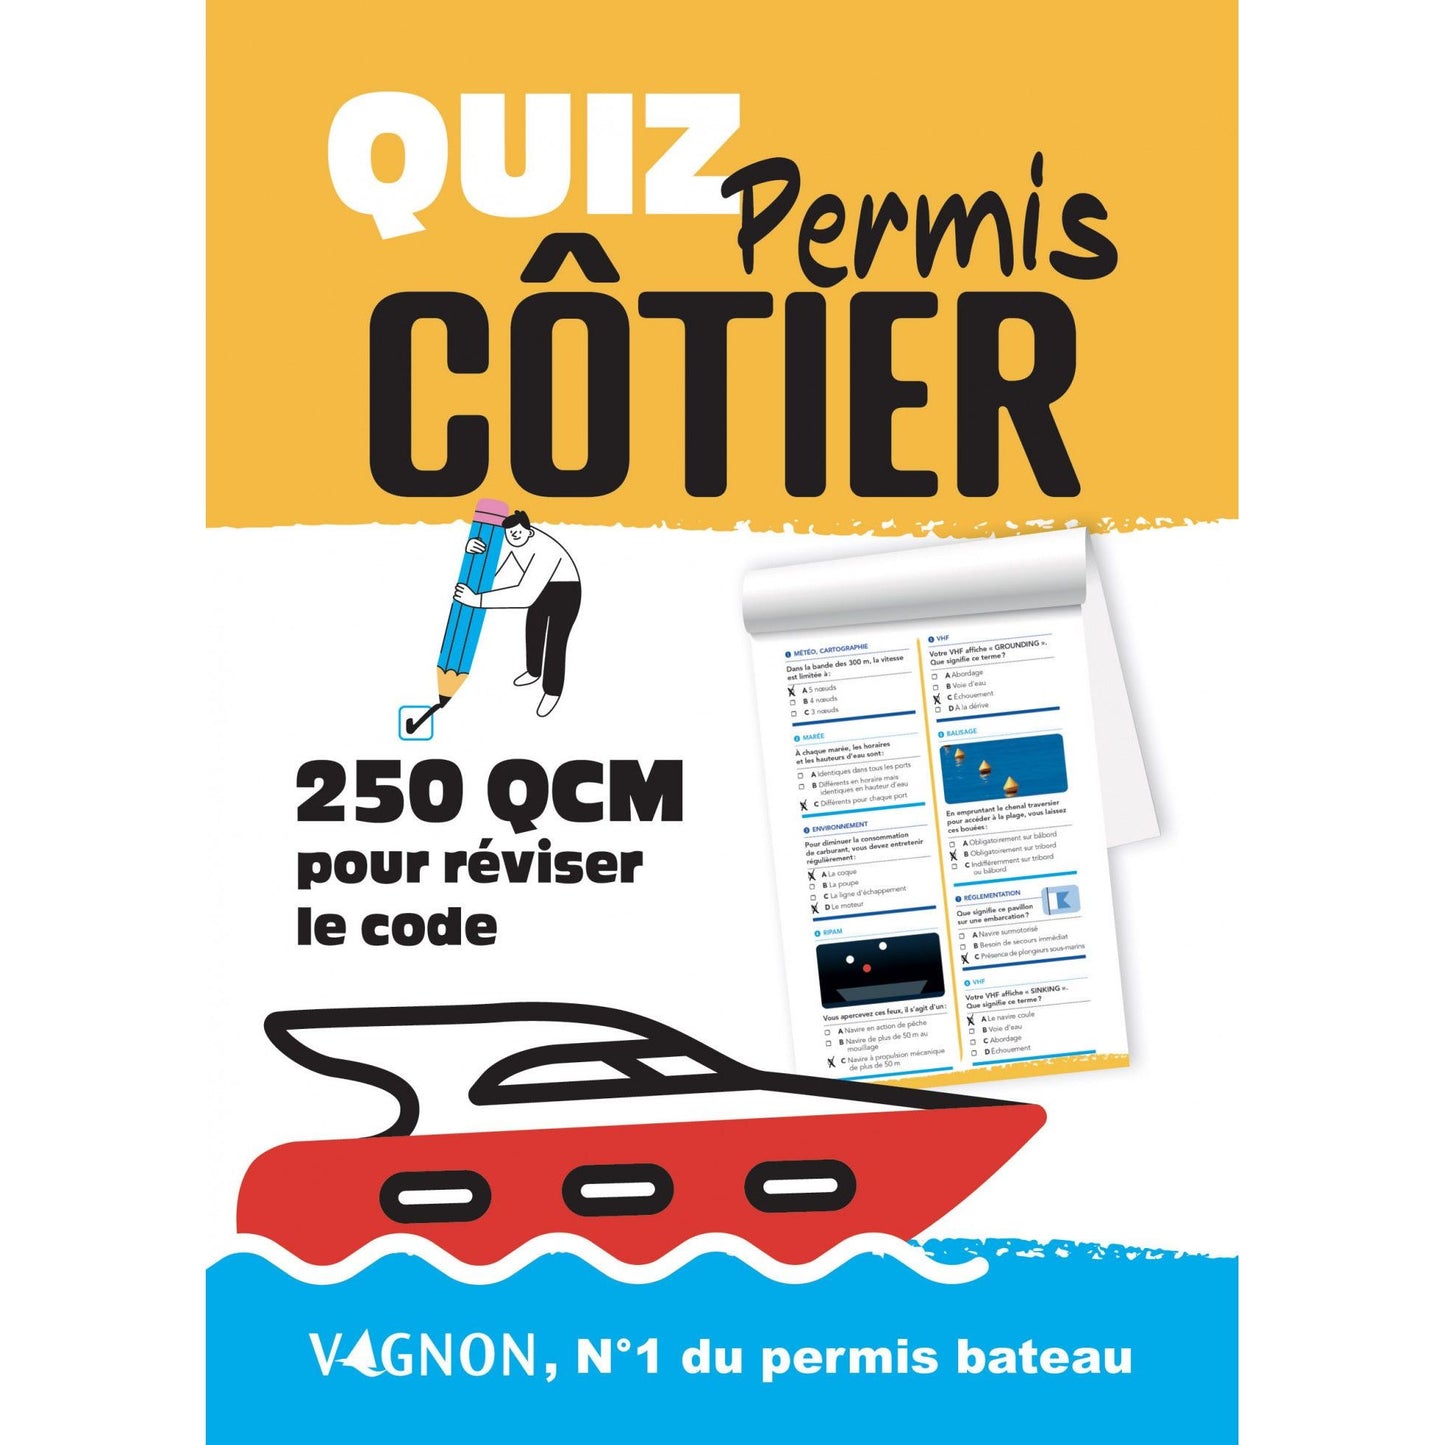 QUIZ PERMIS CÔTIER -250 QCM POUR REVISER LE CODE